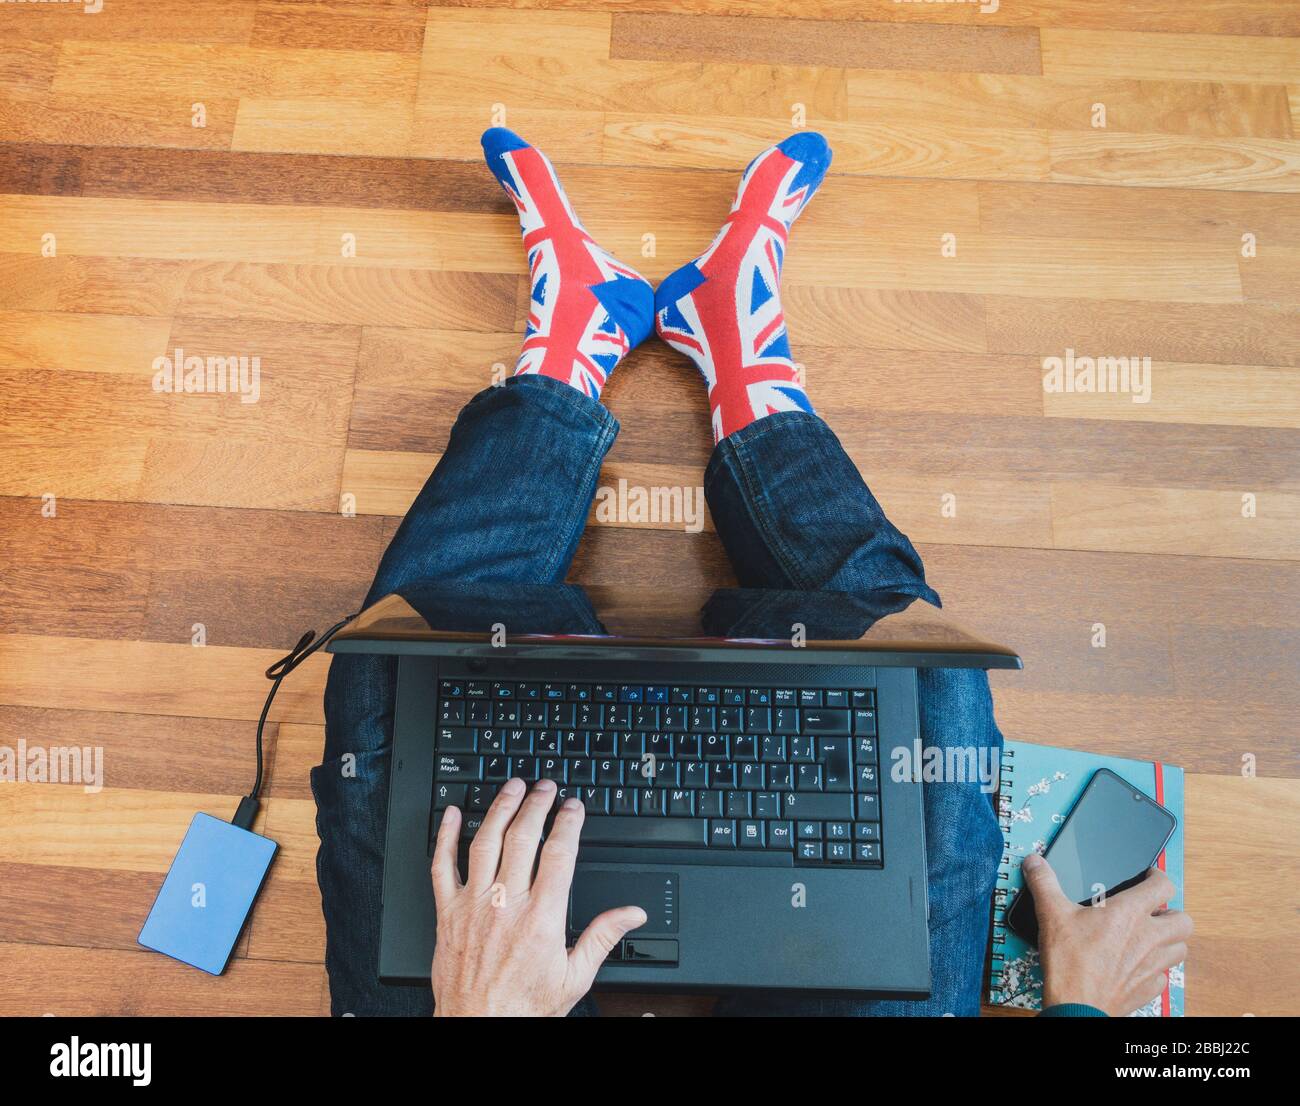 Homme portant une chaussette drapeau Jack Union assise sur parquet avec ordinateur portable. Travailler de chez soi, isolement de soi, distanciation sociale, Coronavirus... concept Banque D'Images